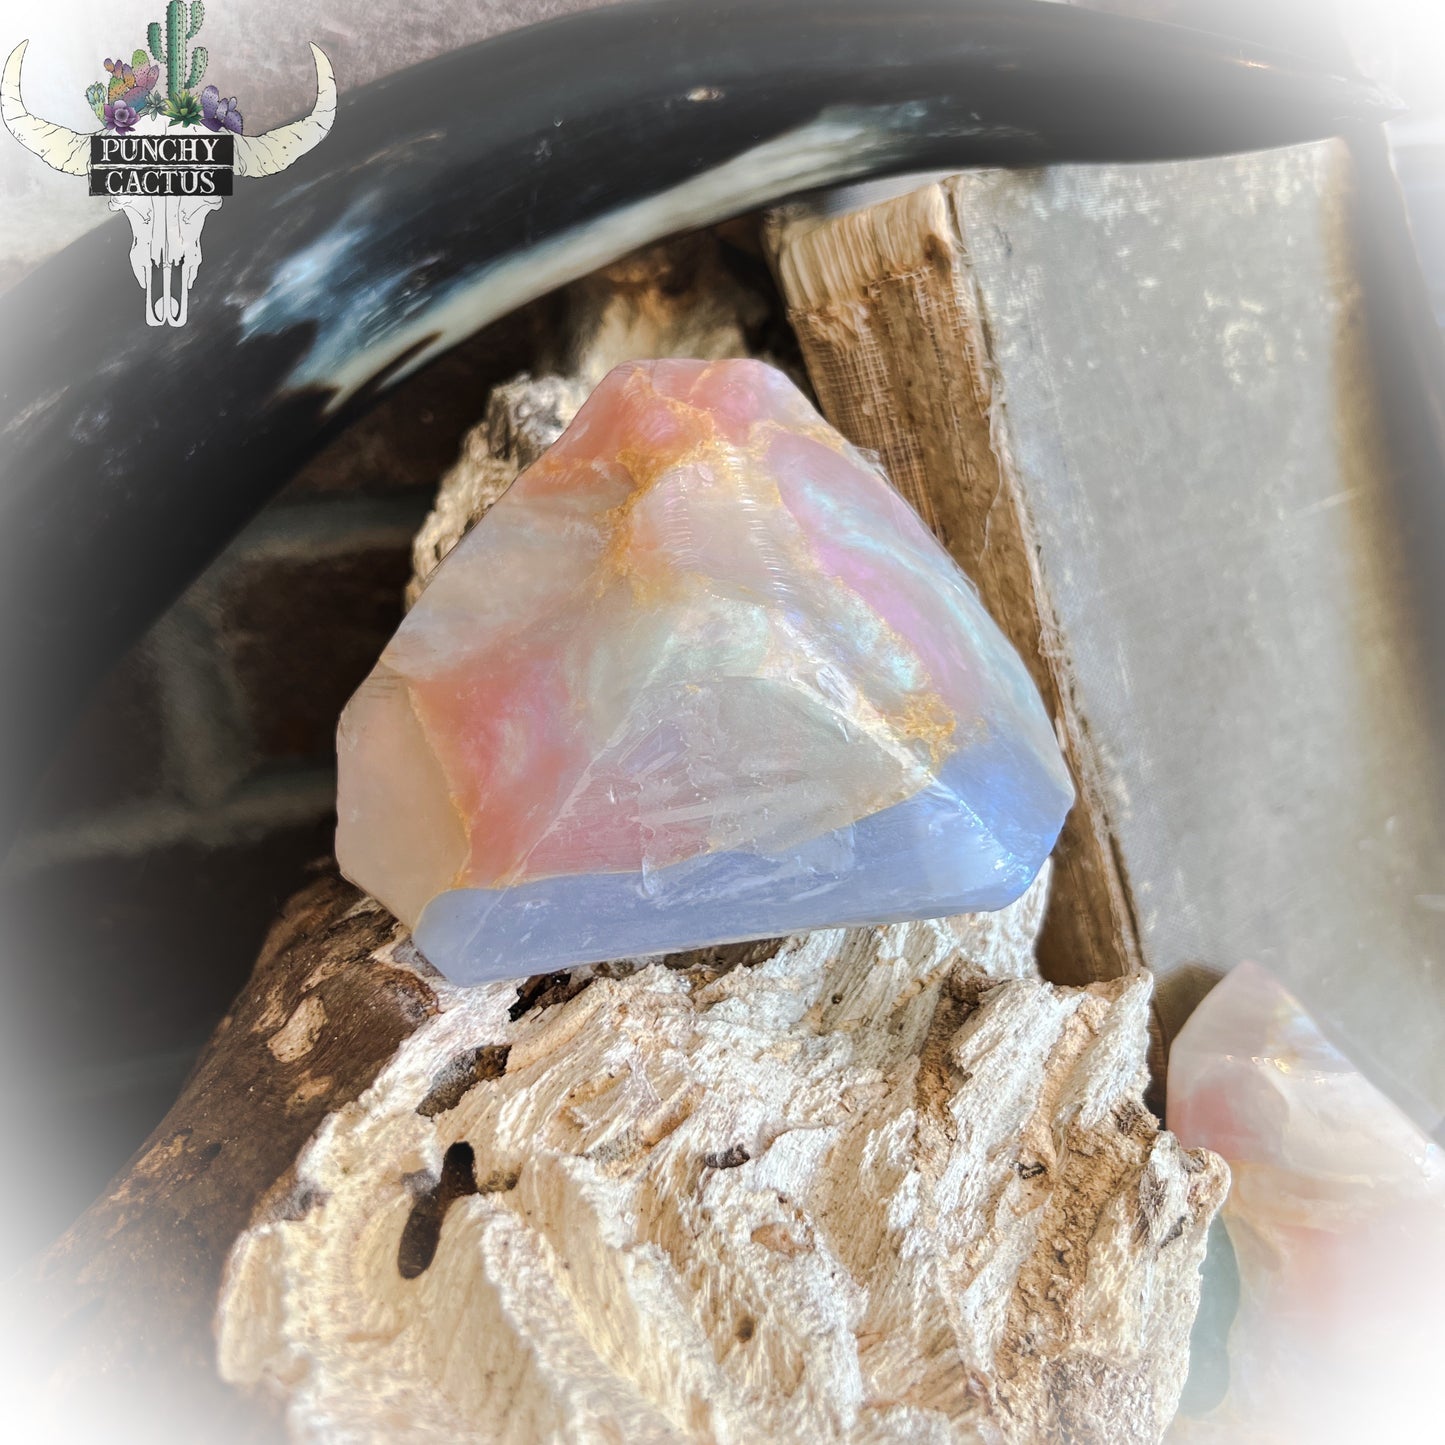 boho crystal soap rock - white opal